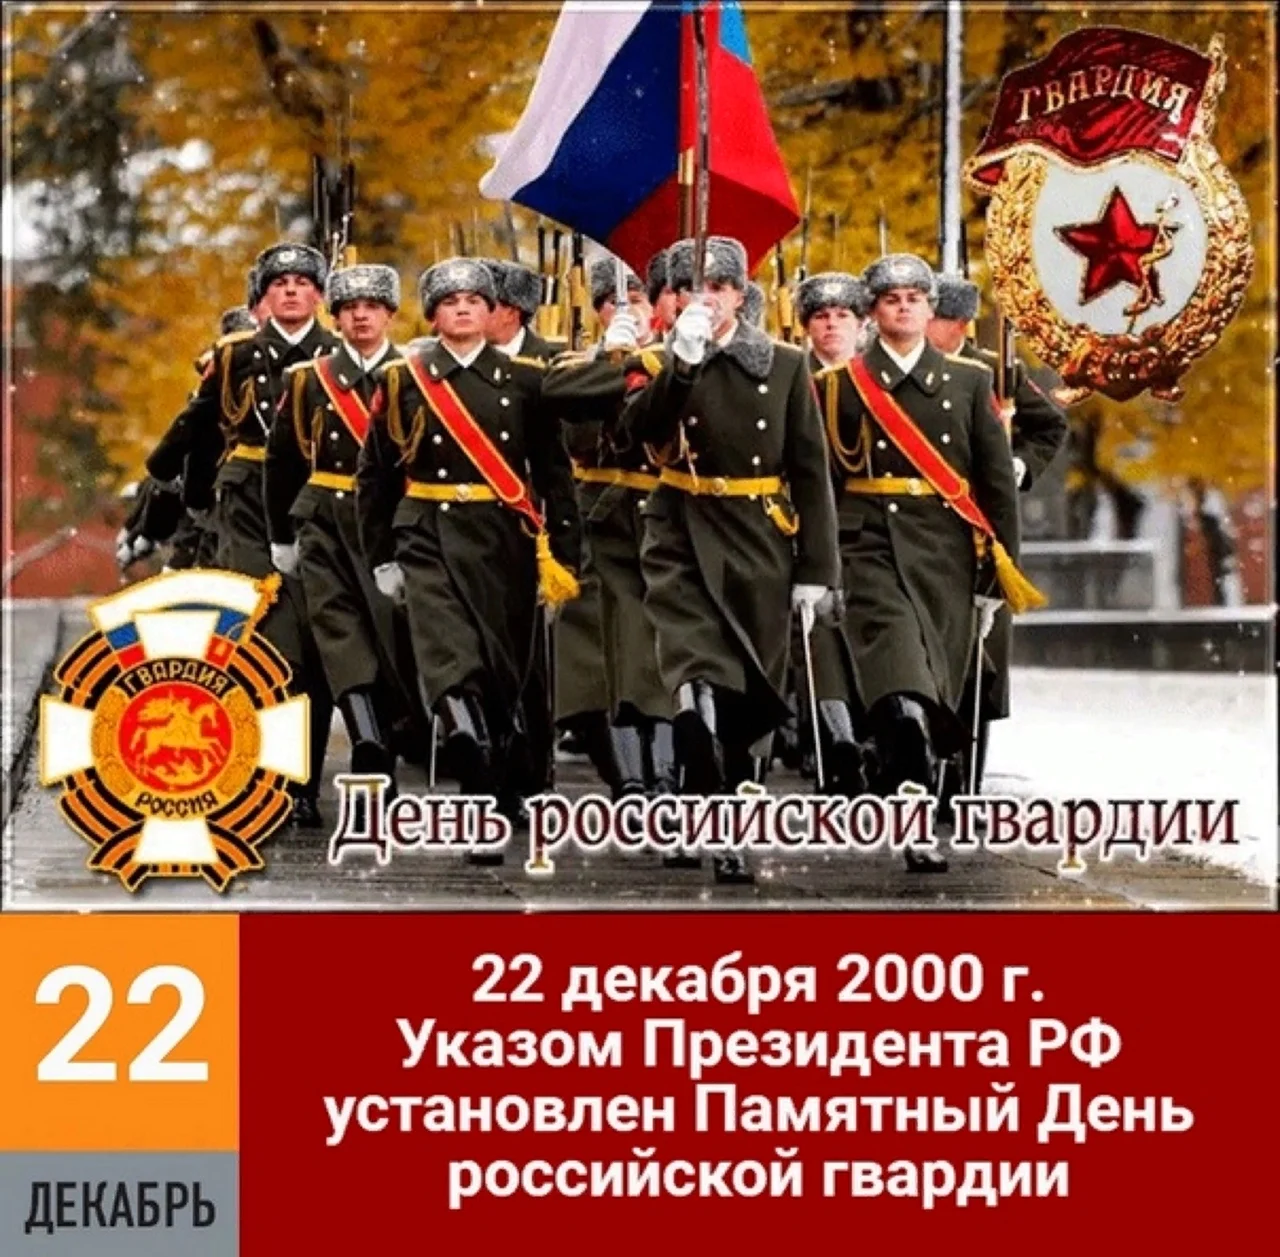 Указом президента РФ установлен памятный день Российской гвардии. Поздравление